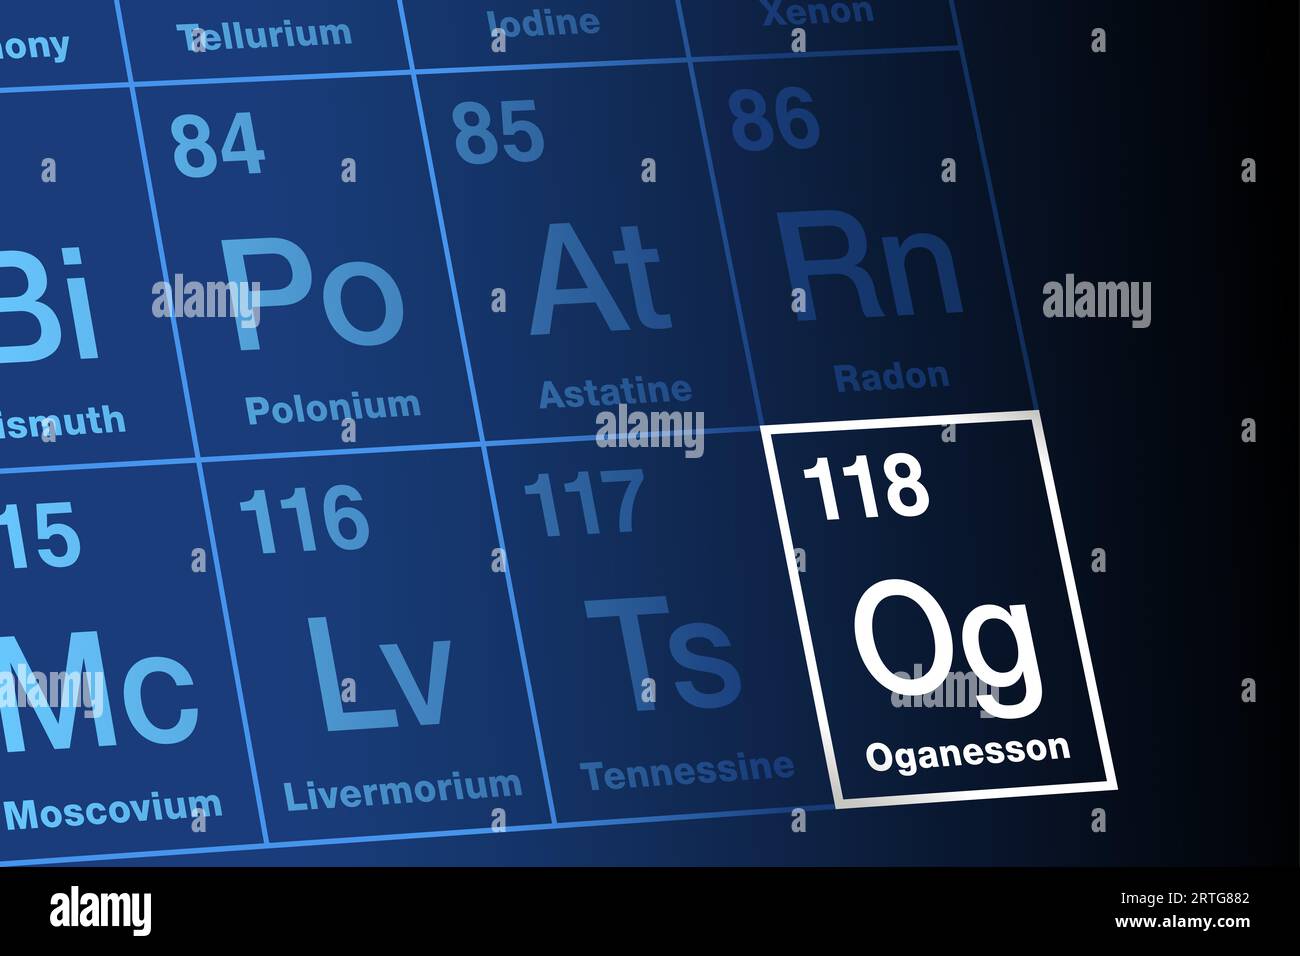 Oganesson sur la table périodique des éléments. Elément de transactinide synthétique superlourd extrêmement radioactif. Symbole og, numéro atomique 118. Banque D'Images